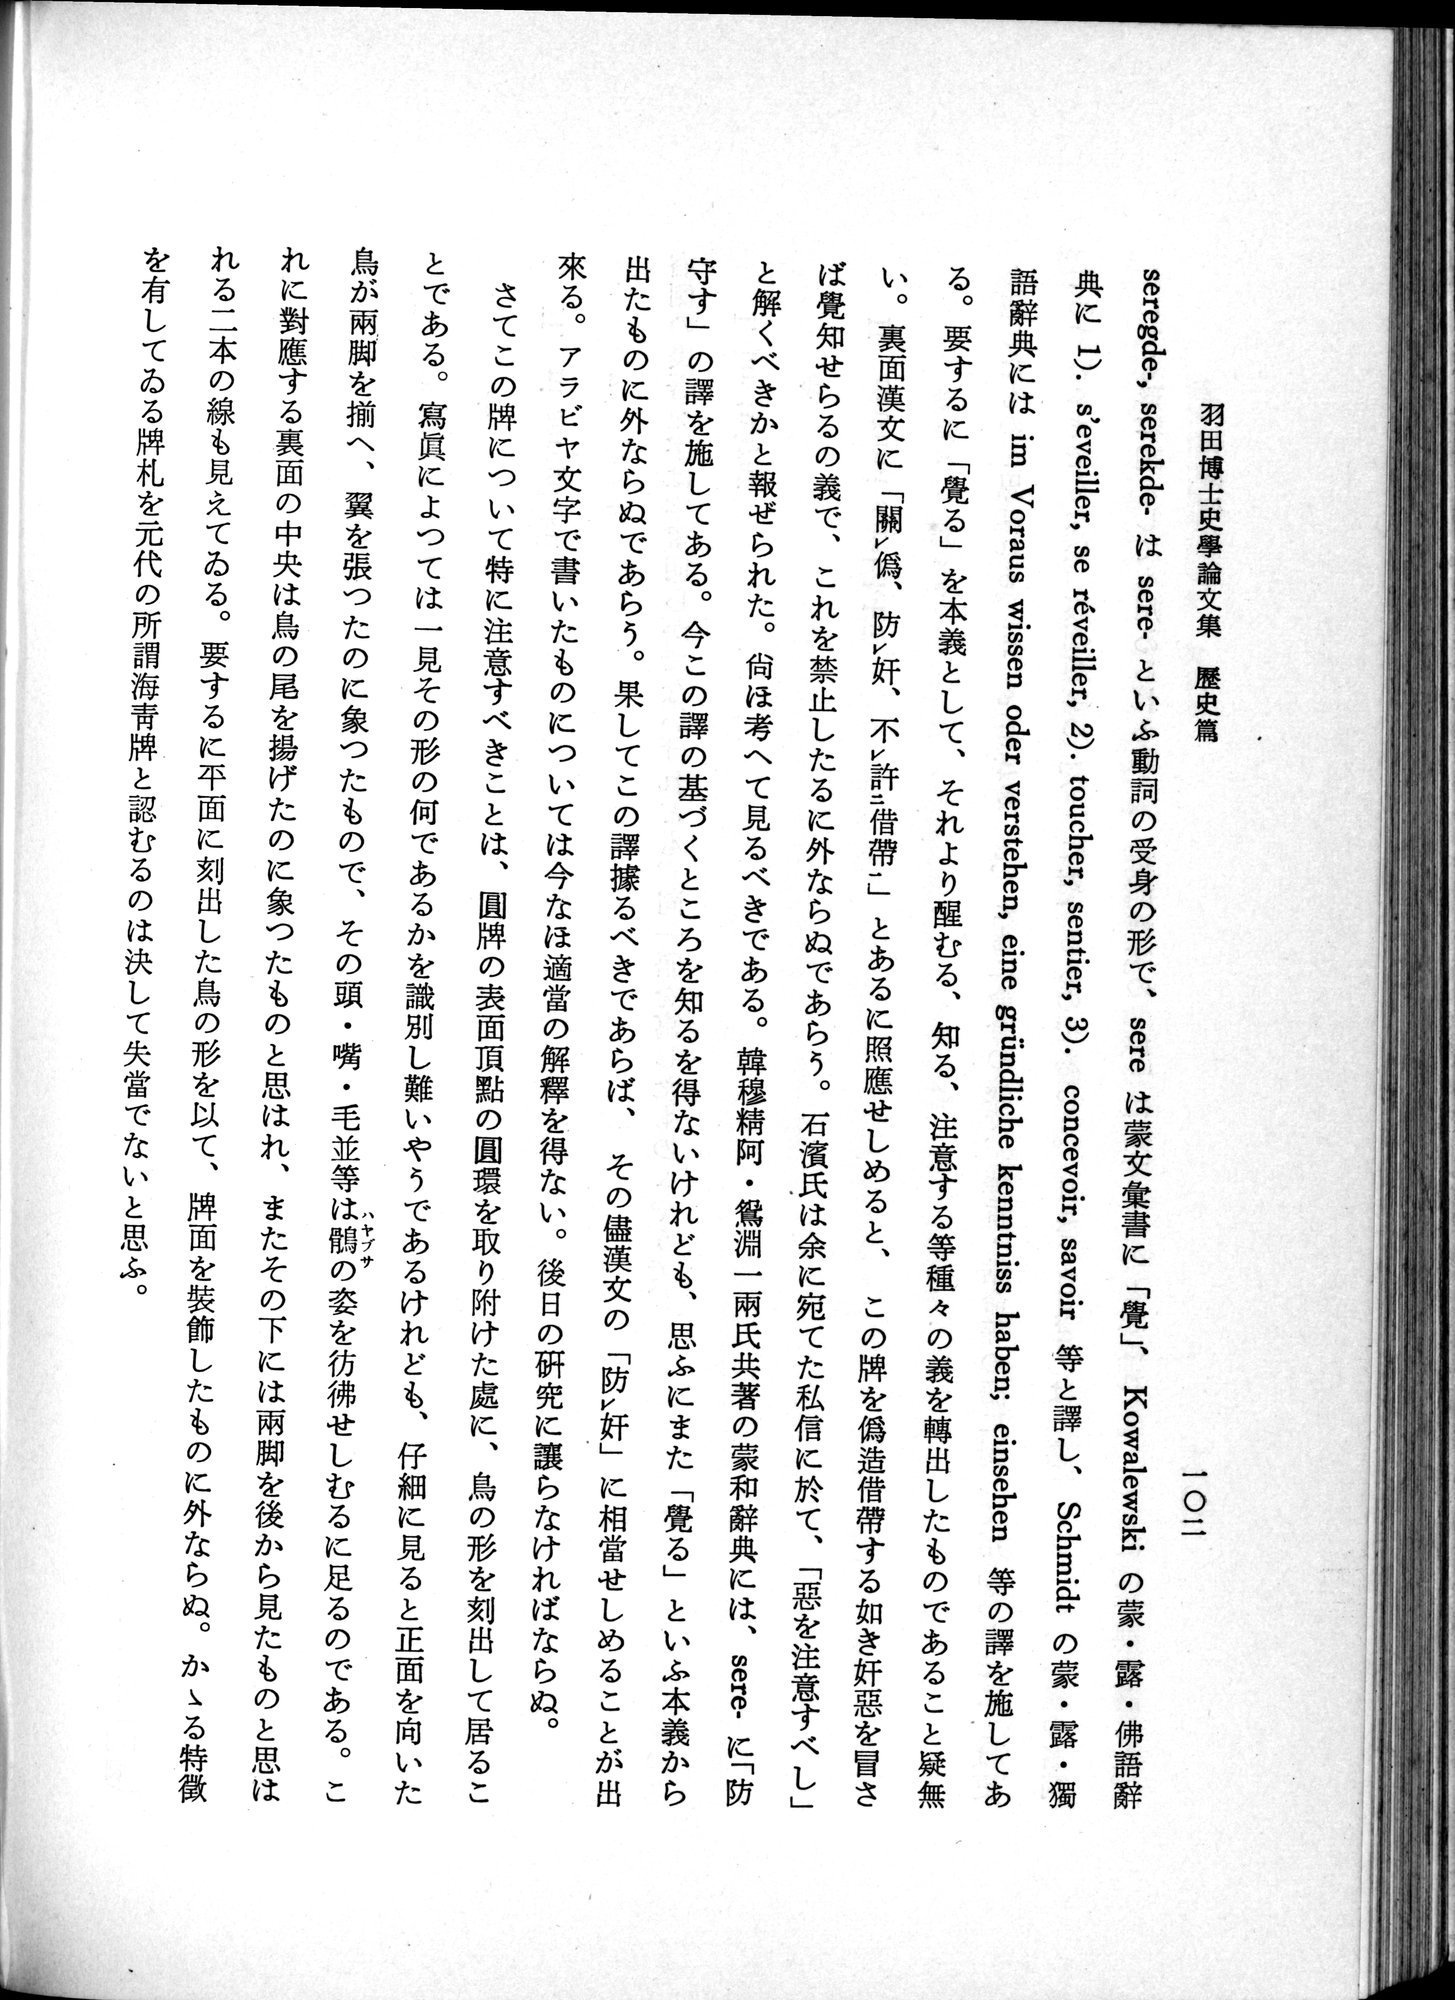 羽田博士史学論文集 : vol.1 / Page 140 (Grayscale High Resolution Image)